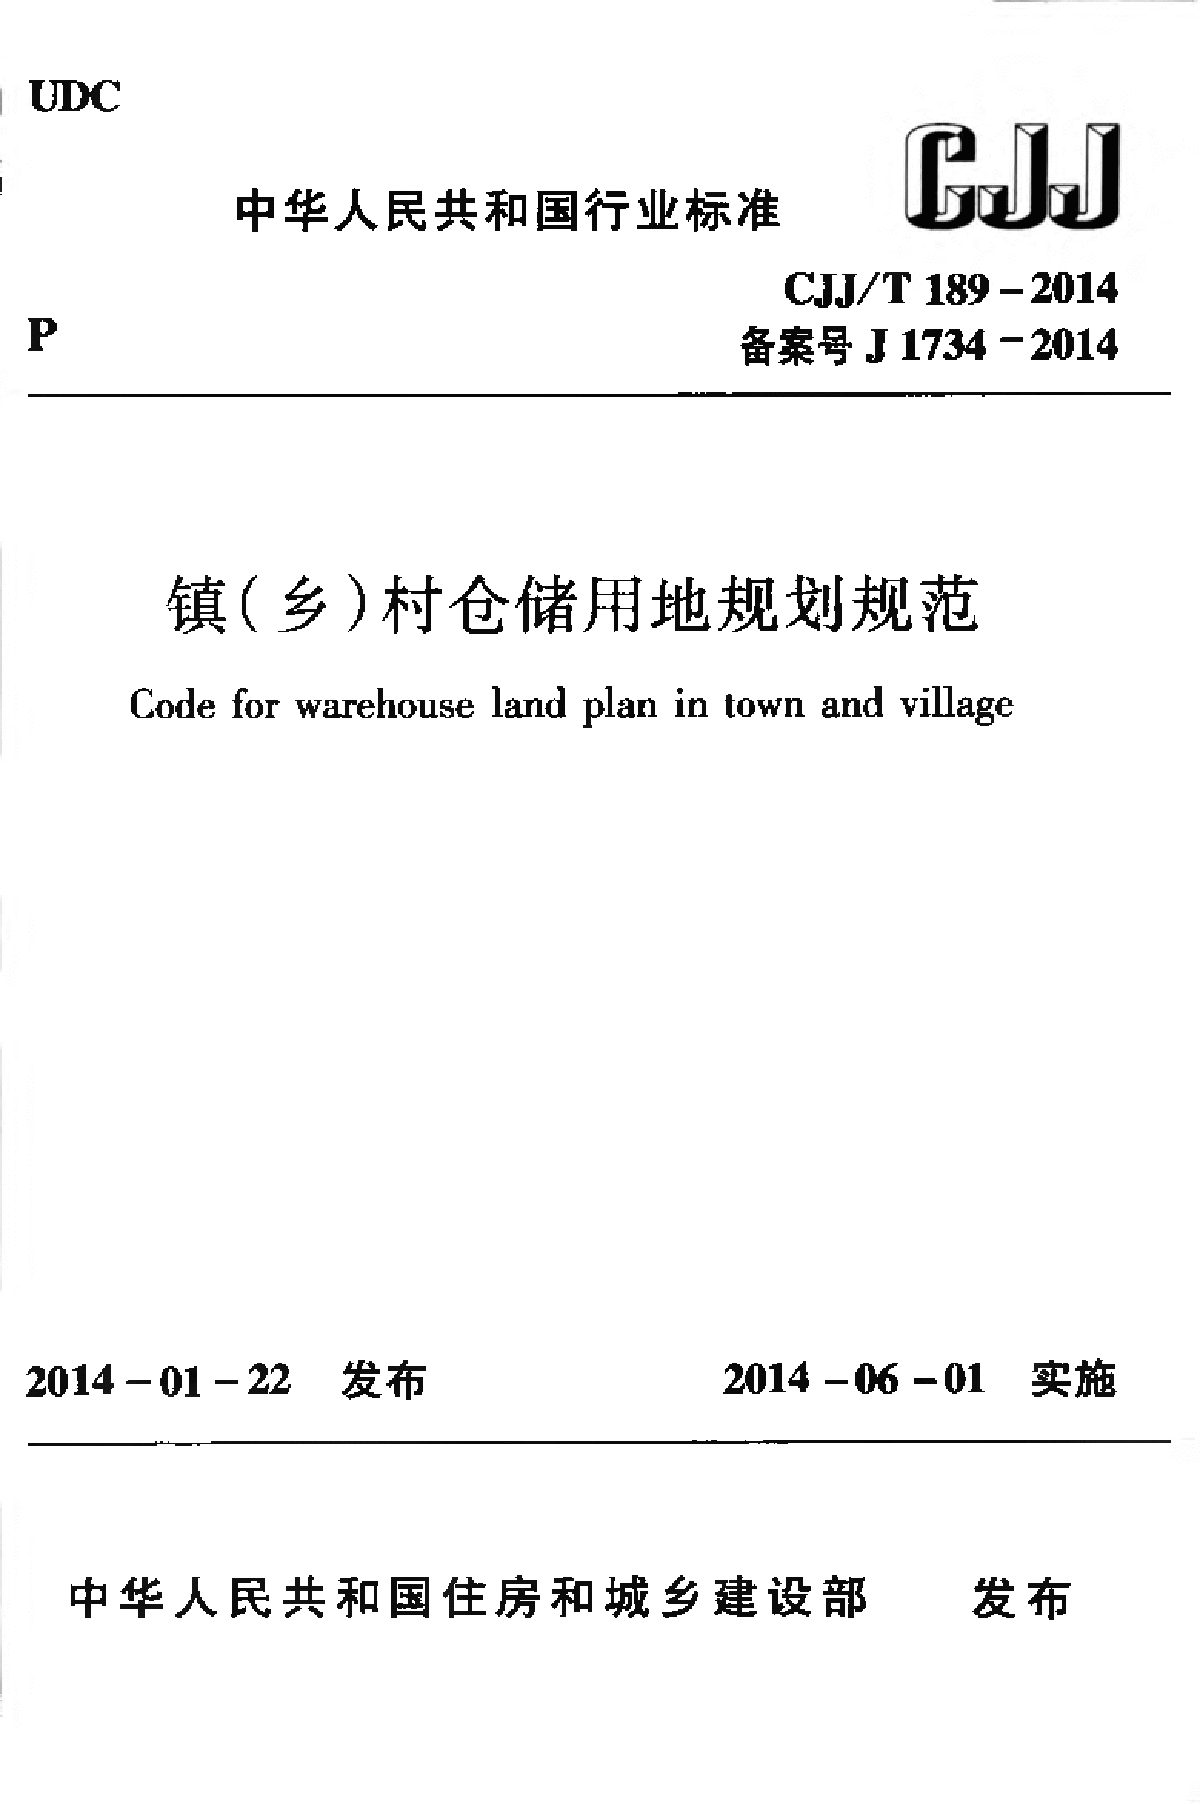 CJJT189-2014镇（乡）村仓储用地规划规范